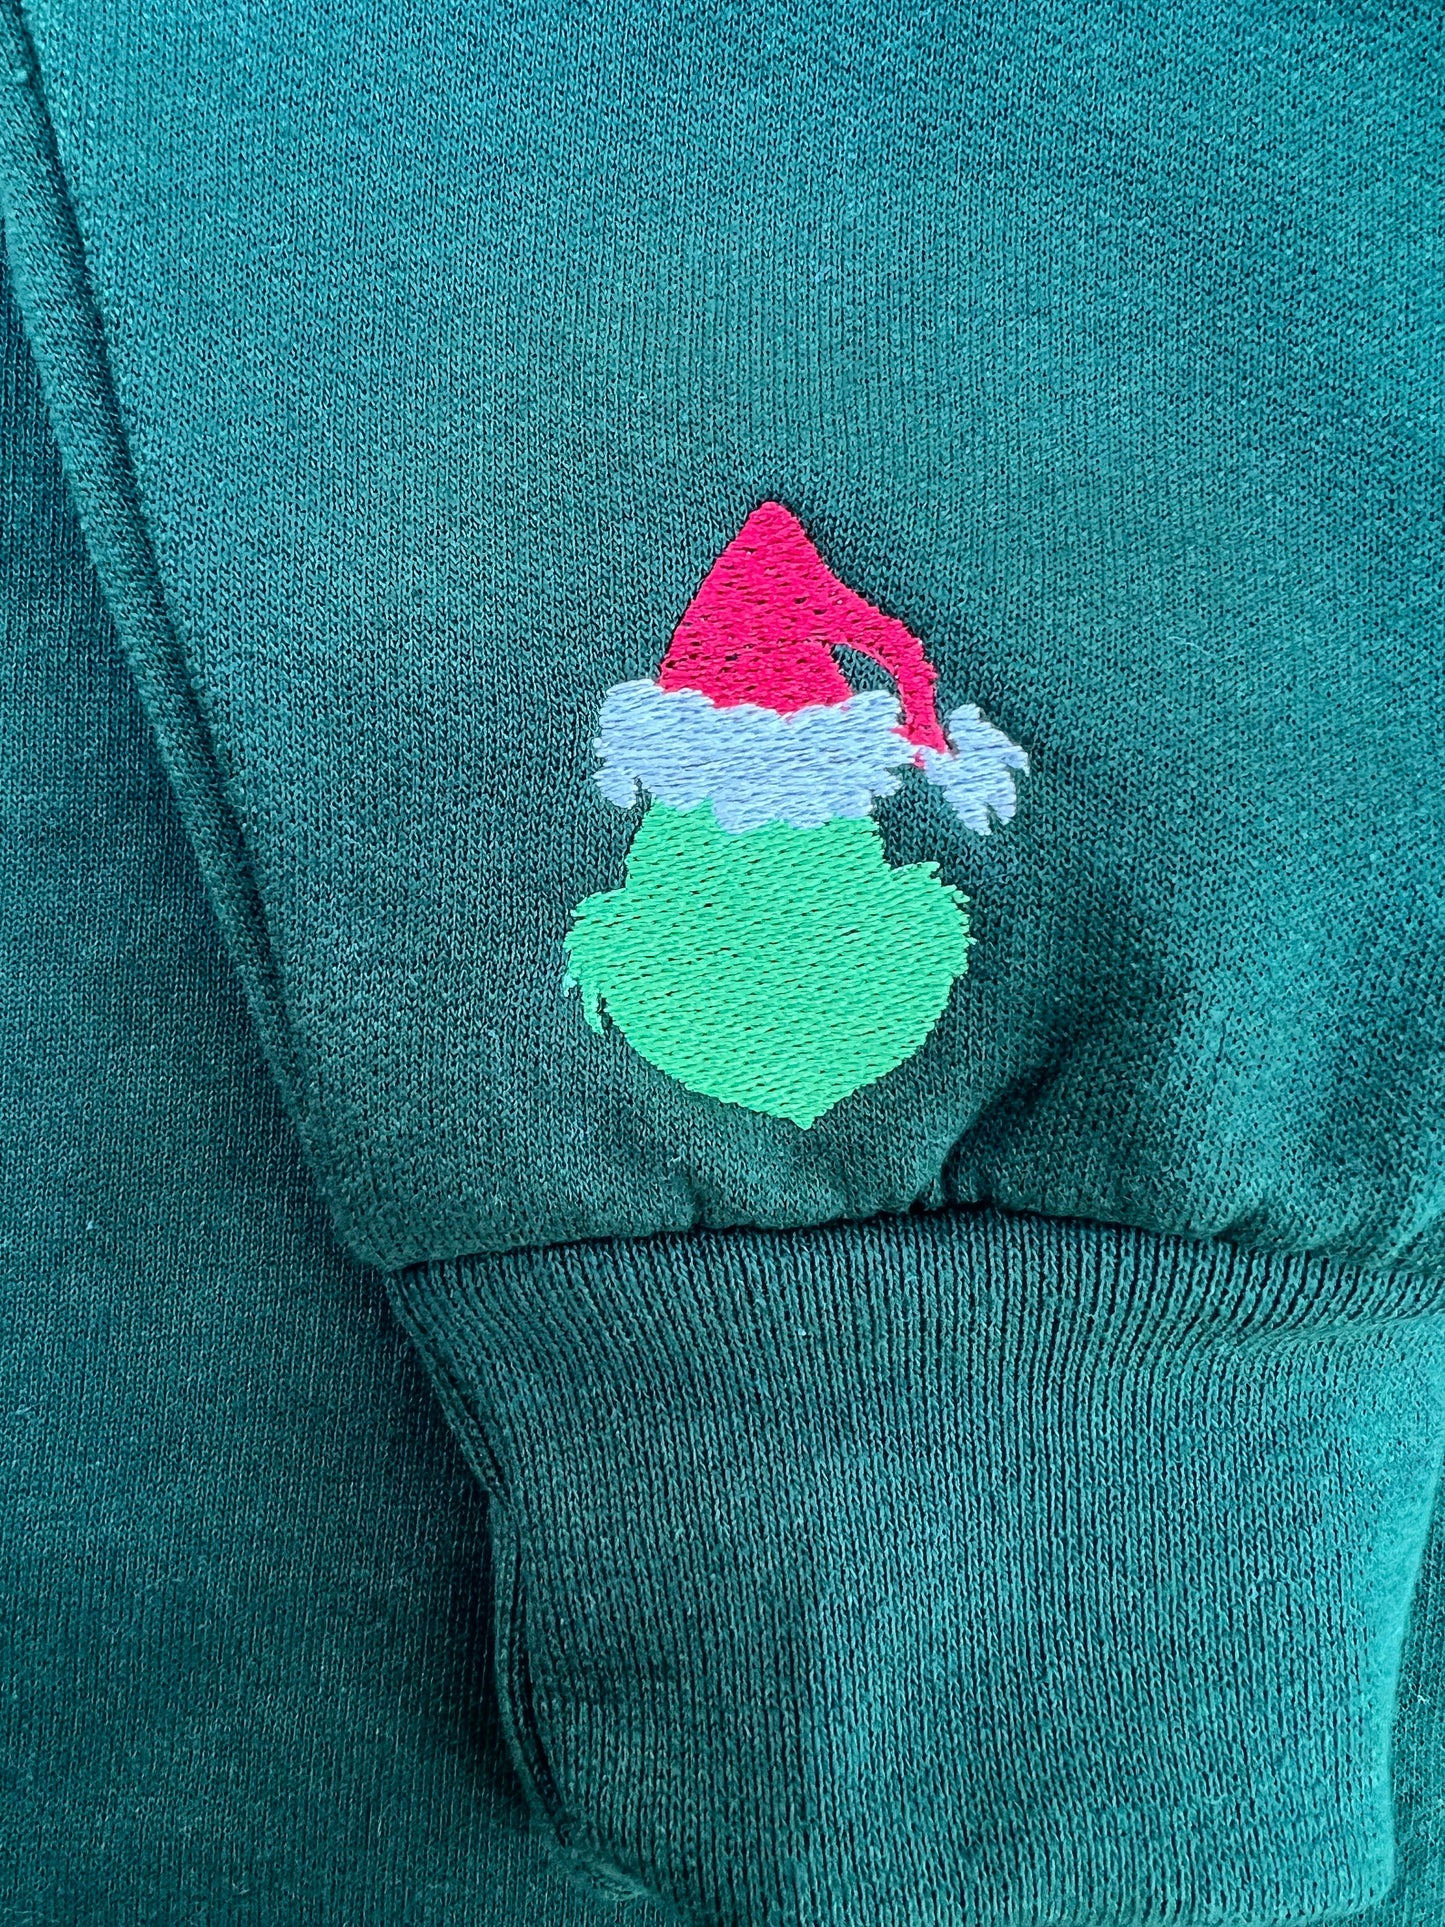 Christmas Sweatshirt Embroidered Christmas Shirt Funny Christmas Gift